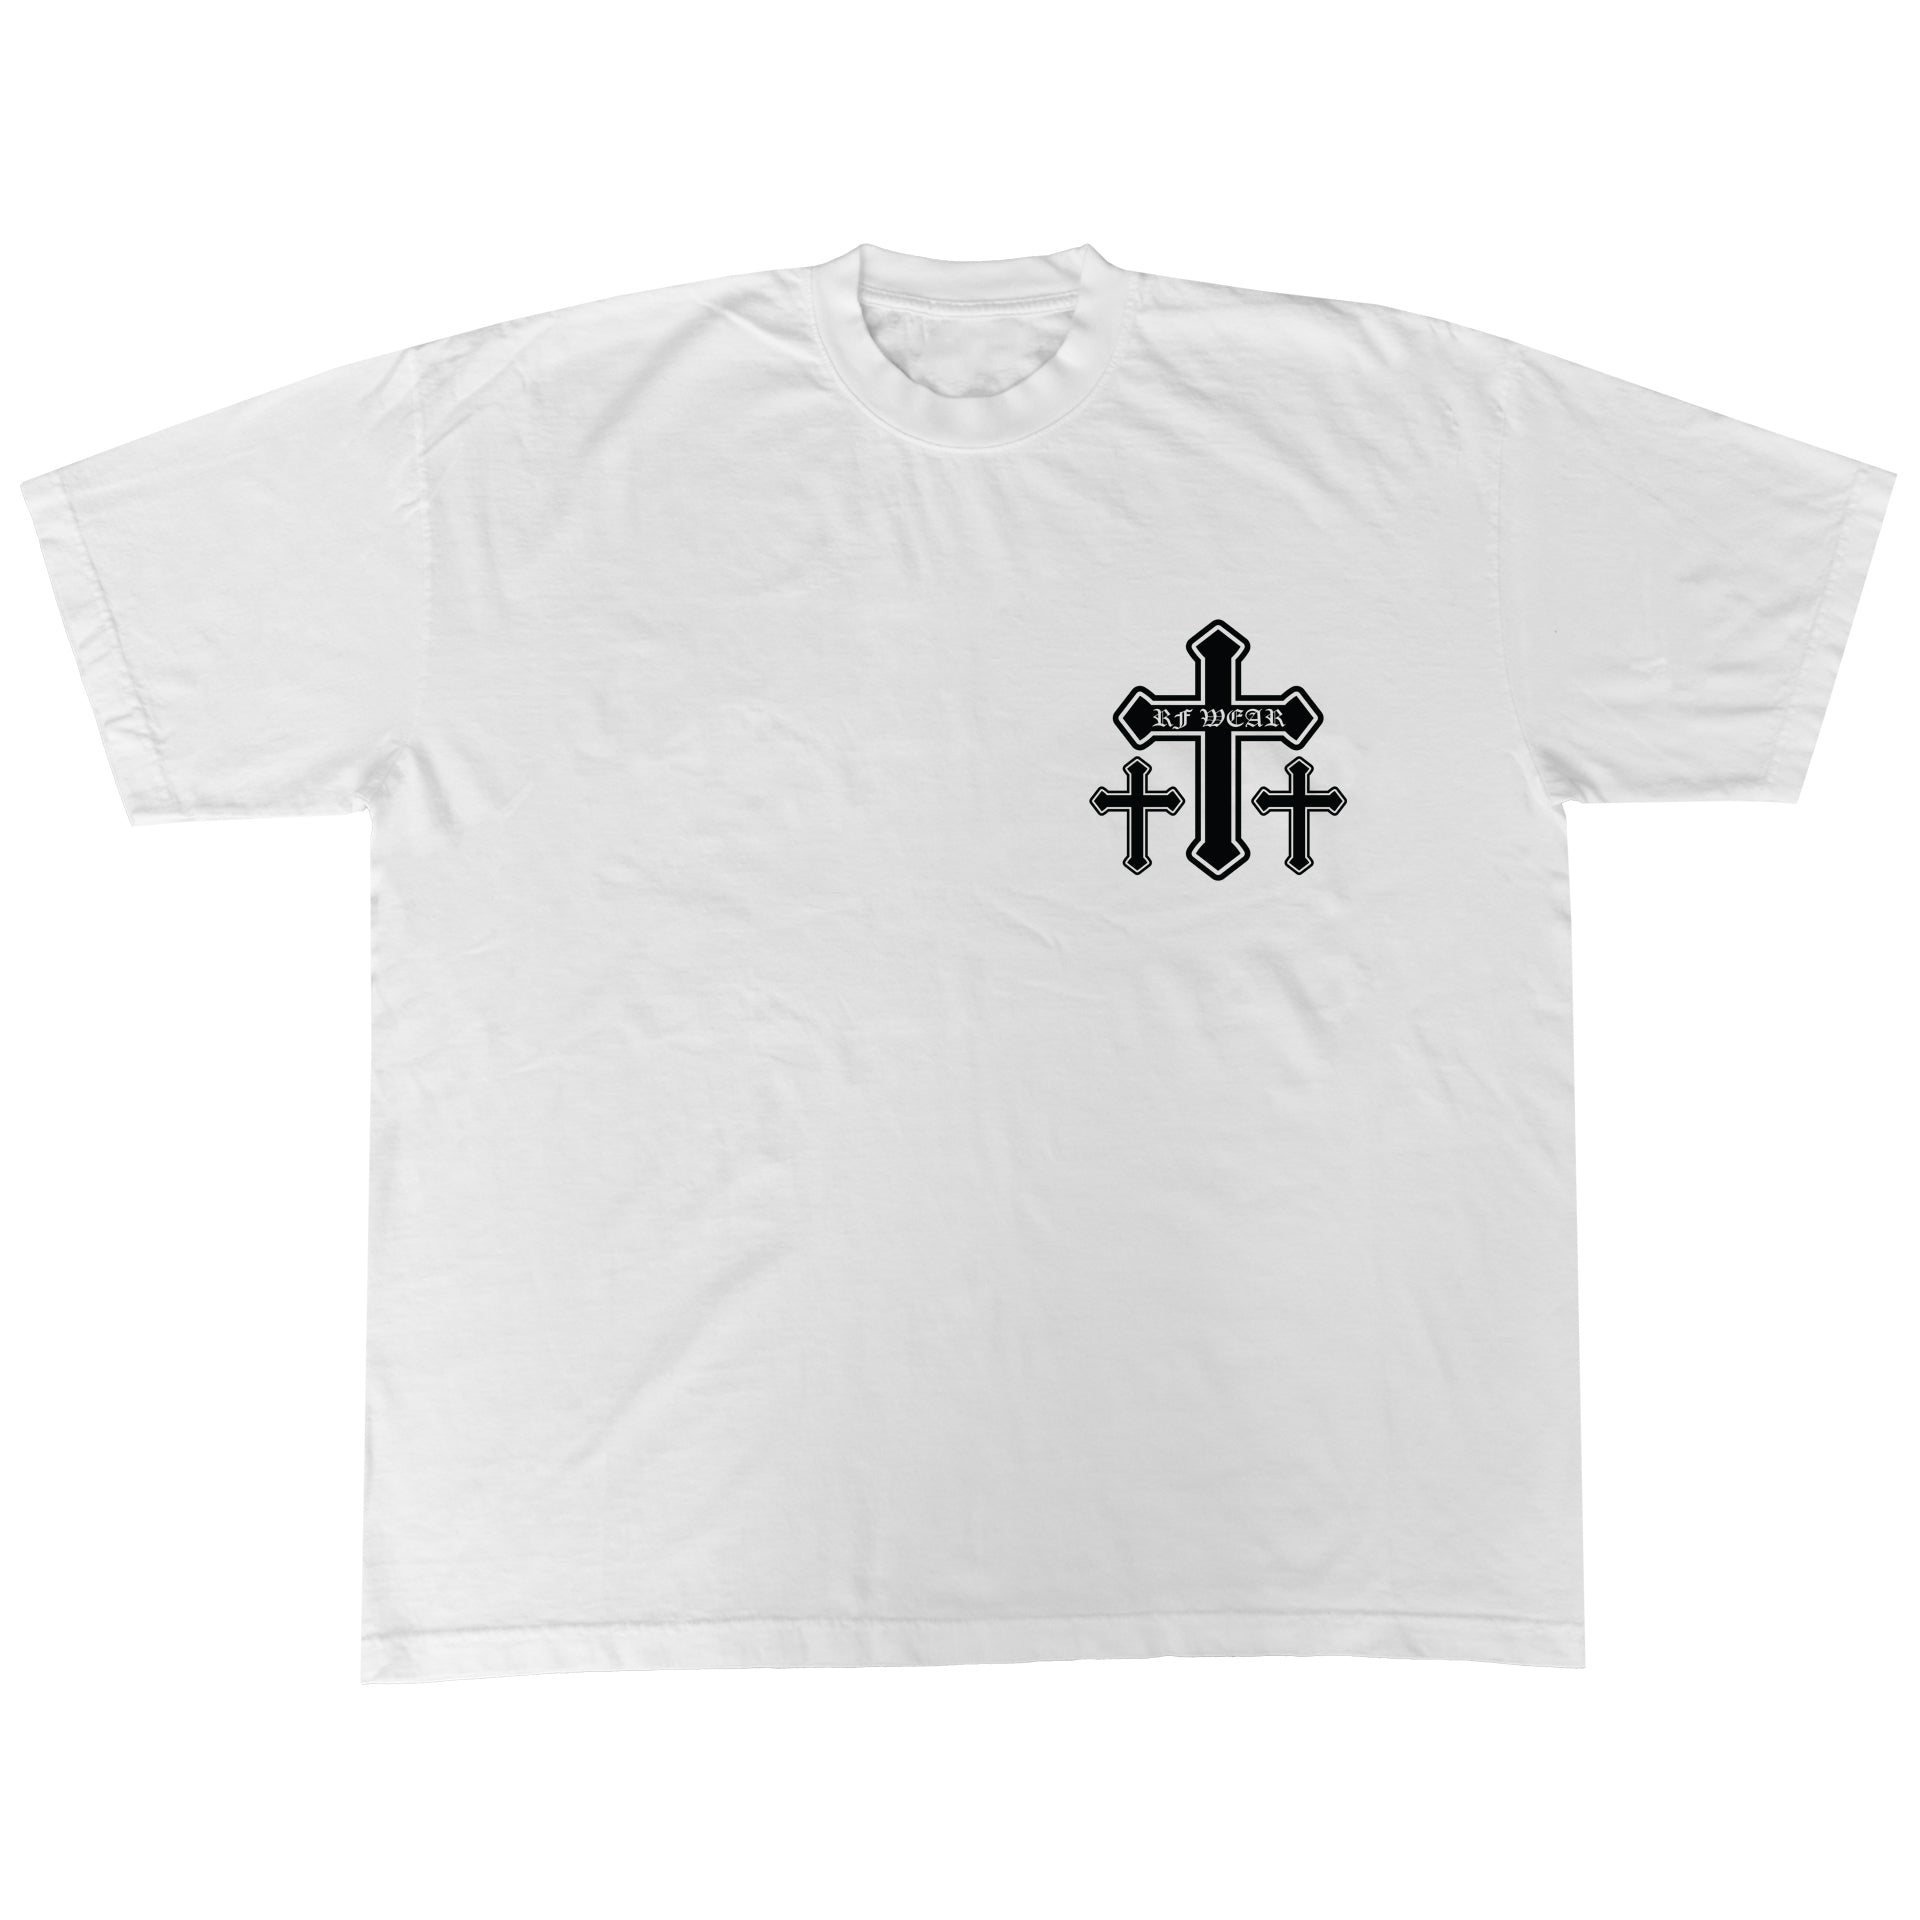 Promo RF Wear Cross T-Shirt